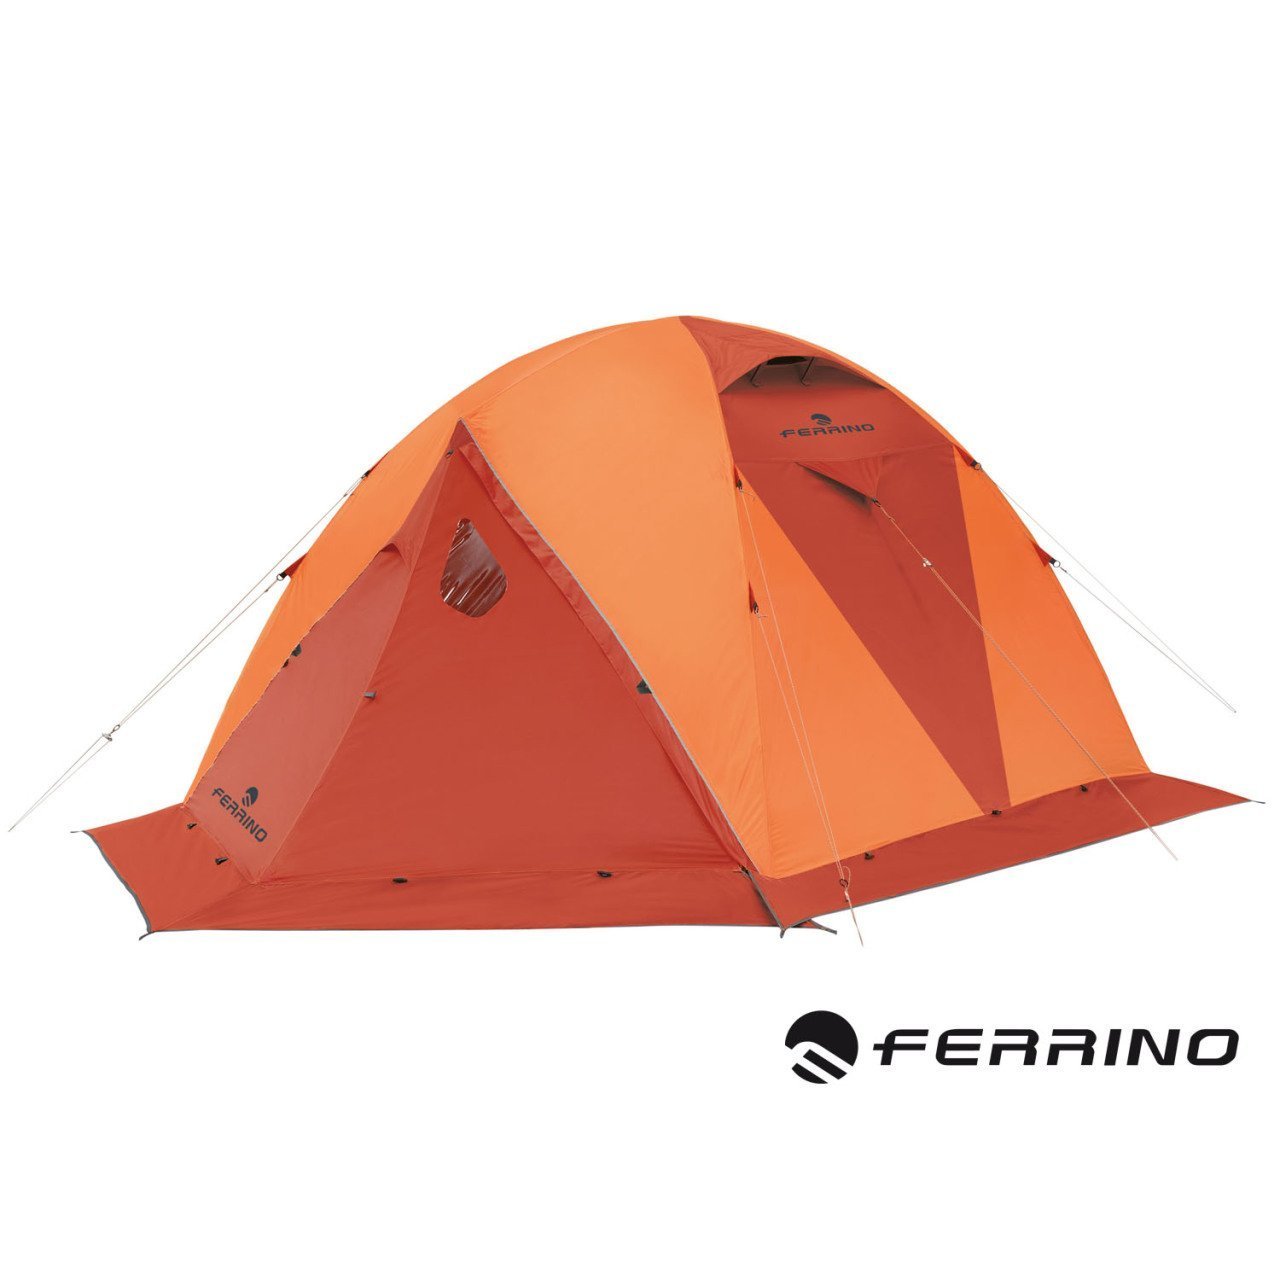 Ferrino Lhotse 4 Tent